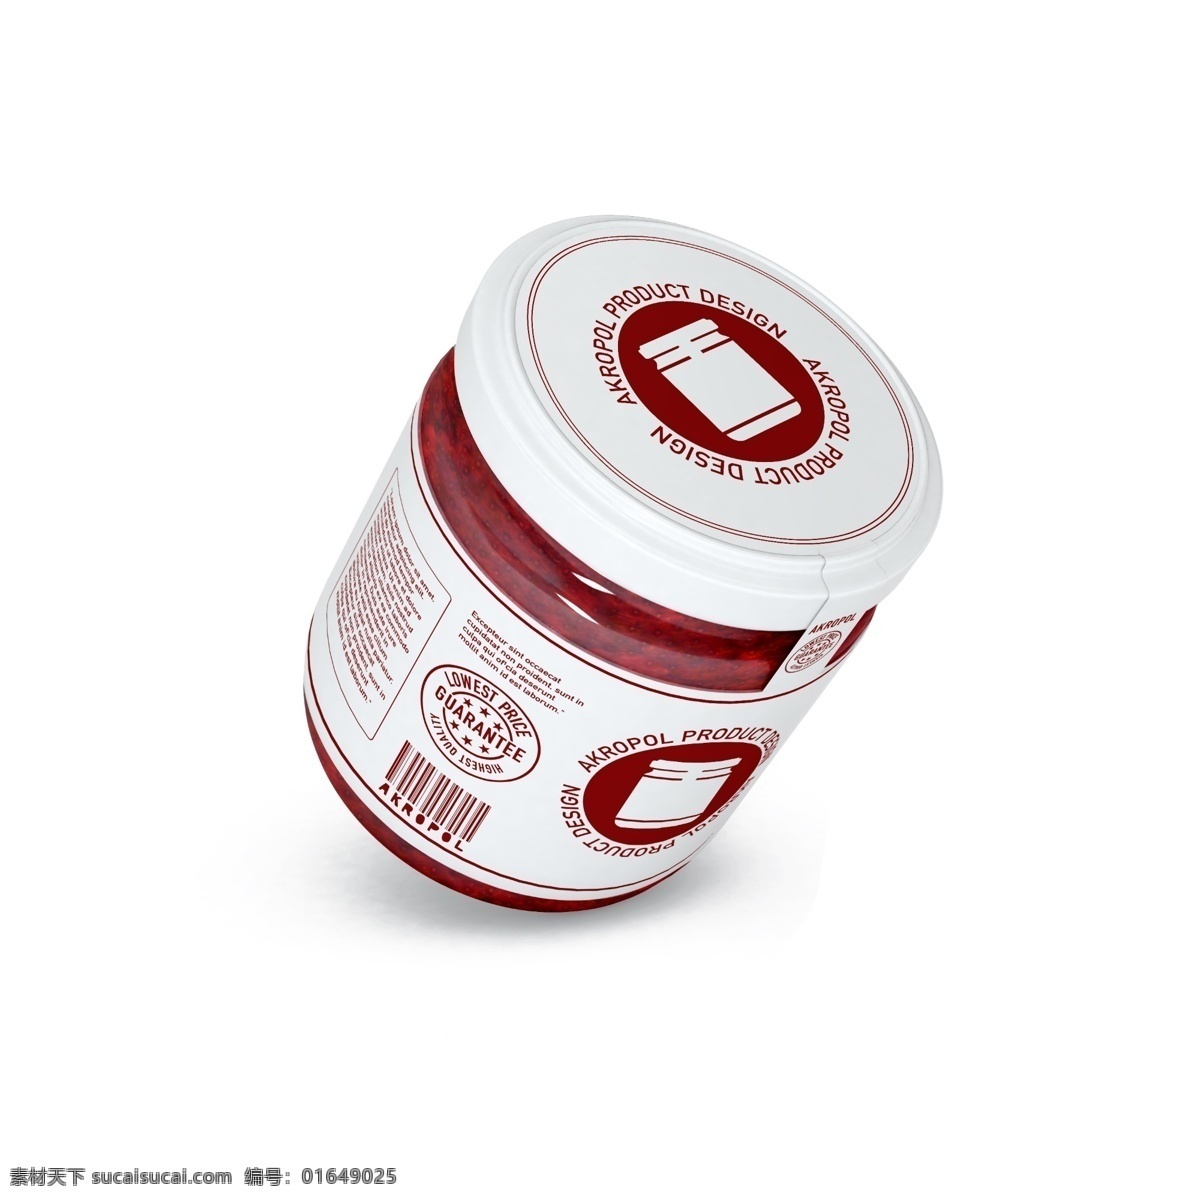 果酱 果酱包装样机 果酱贴图 水果罐头 罐头包装 罐头 智能贴图 包装样机 分层